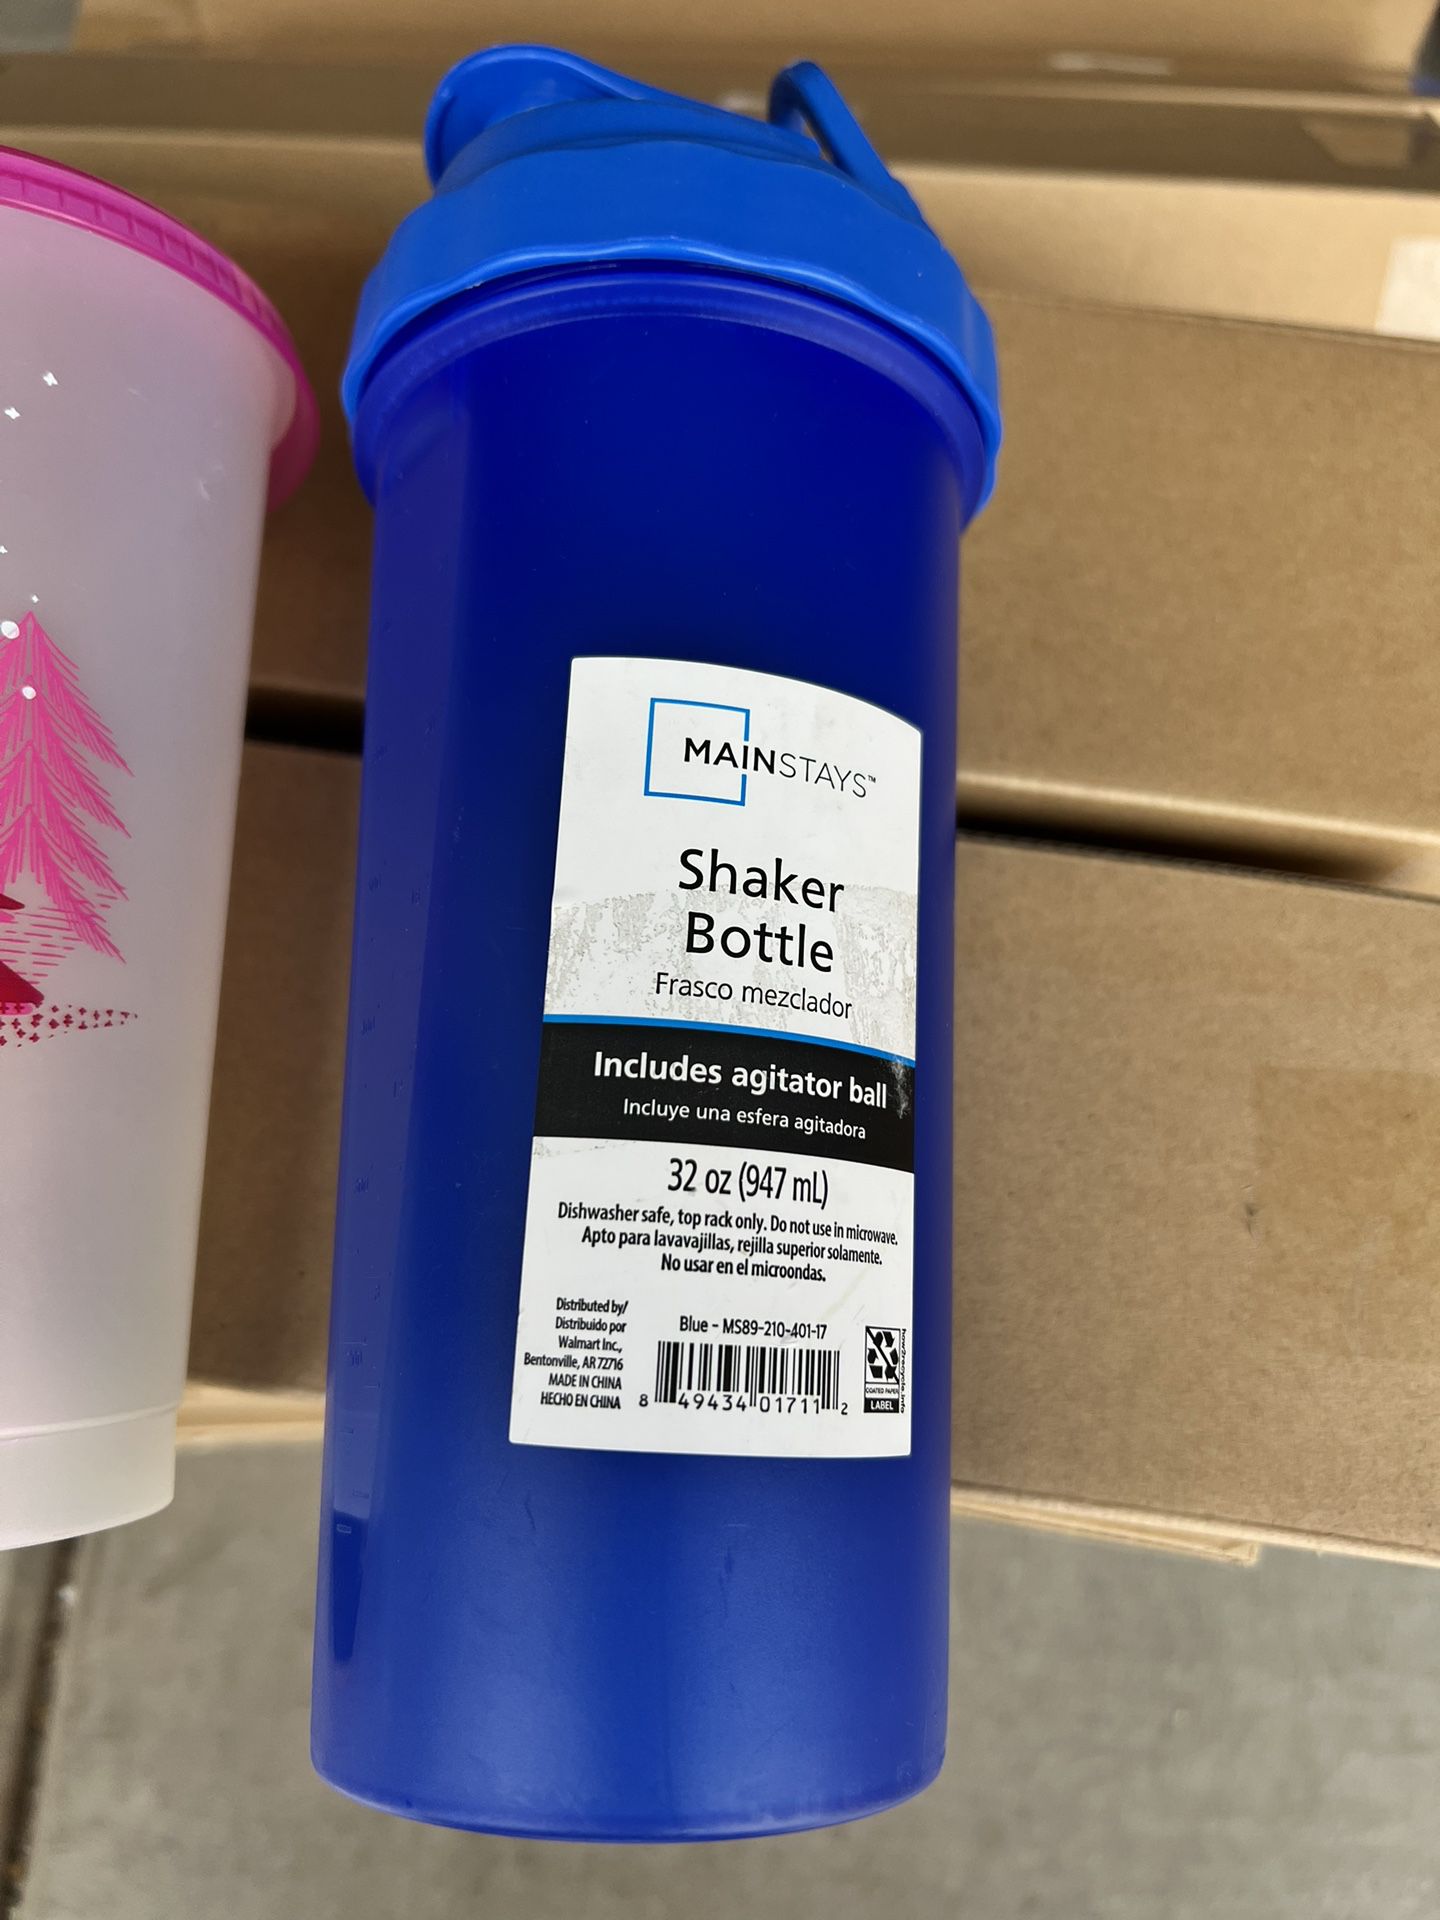 shaker bottle 32 oz includes agitator ball for Sale in Glendale